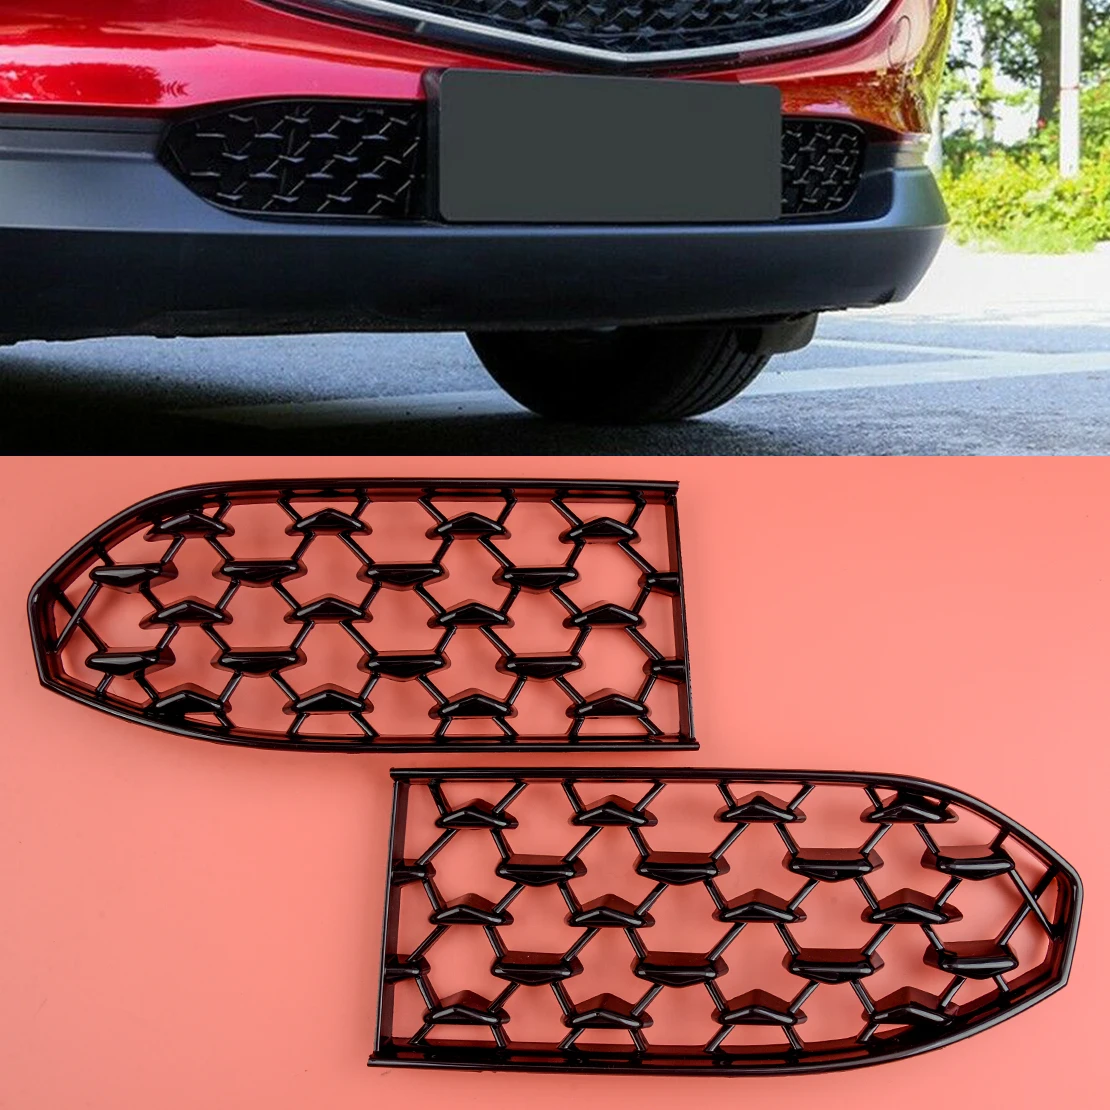 

2 шт./компл. Автомобильная Черная передняя нижняя сетка бампера гриль решетка литье крышка подходит для Mazda CX-30 2020 2021